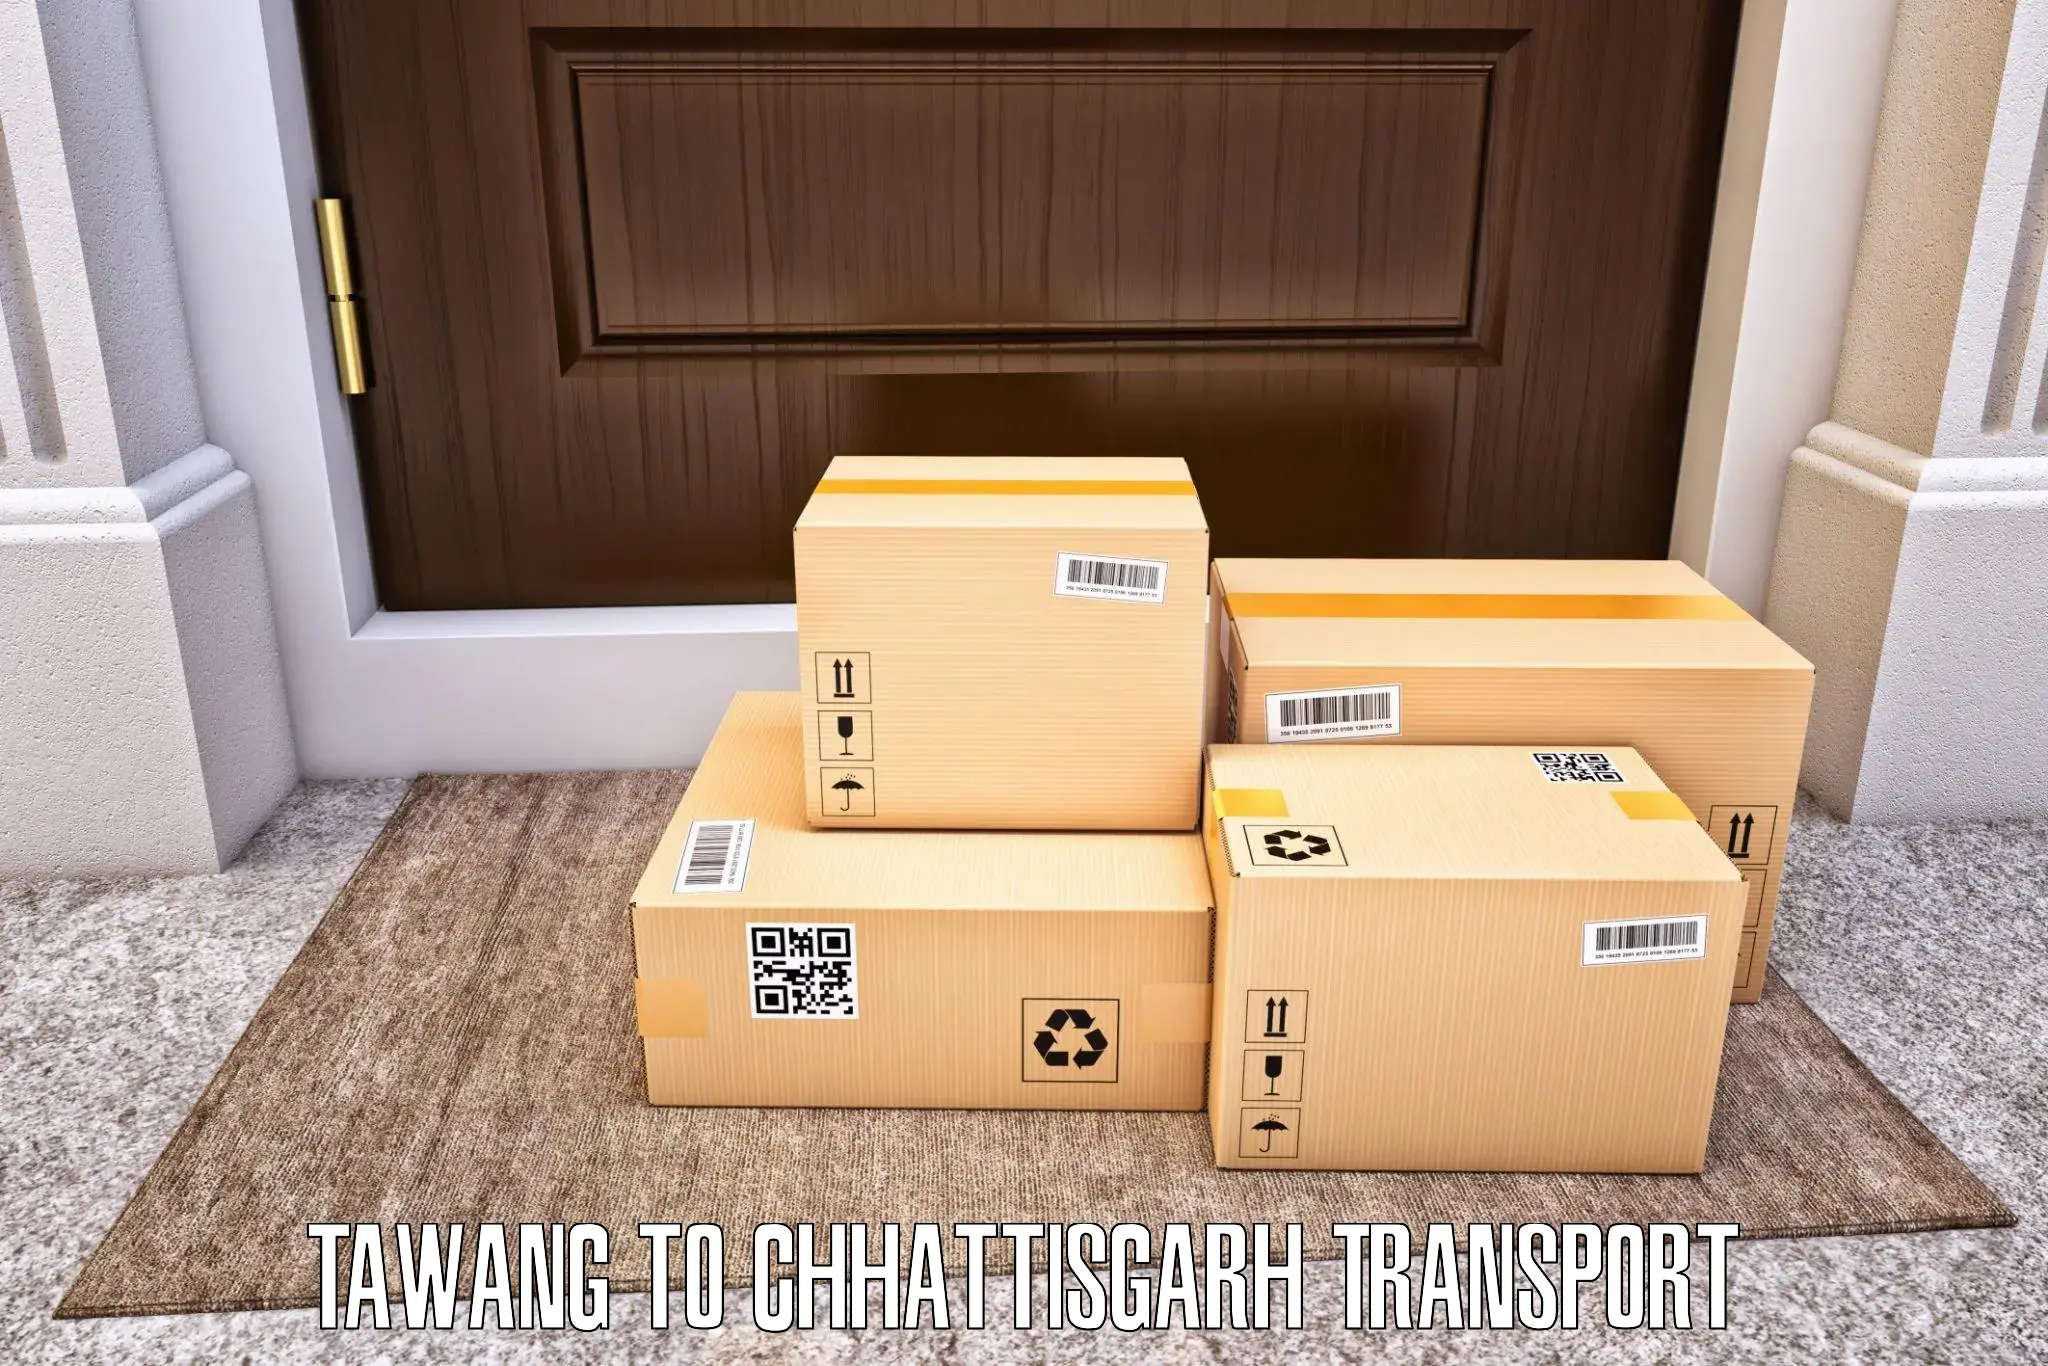 Online transport service Tawang to NIT Raipur